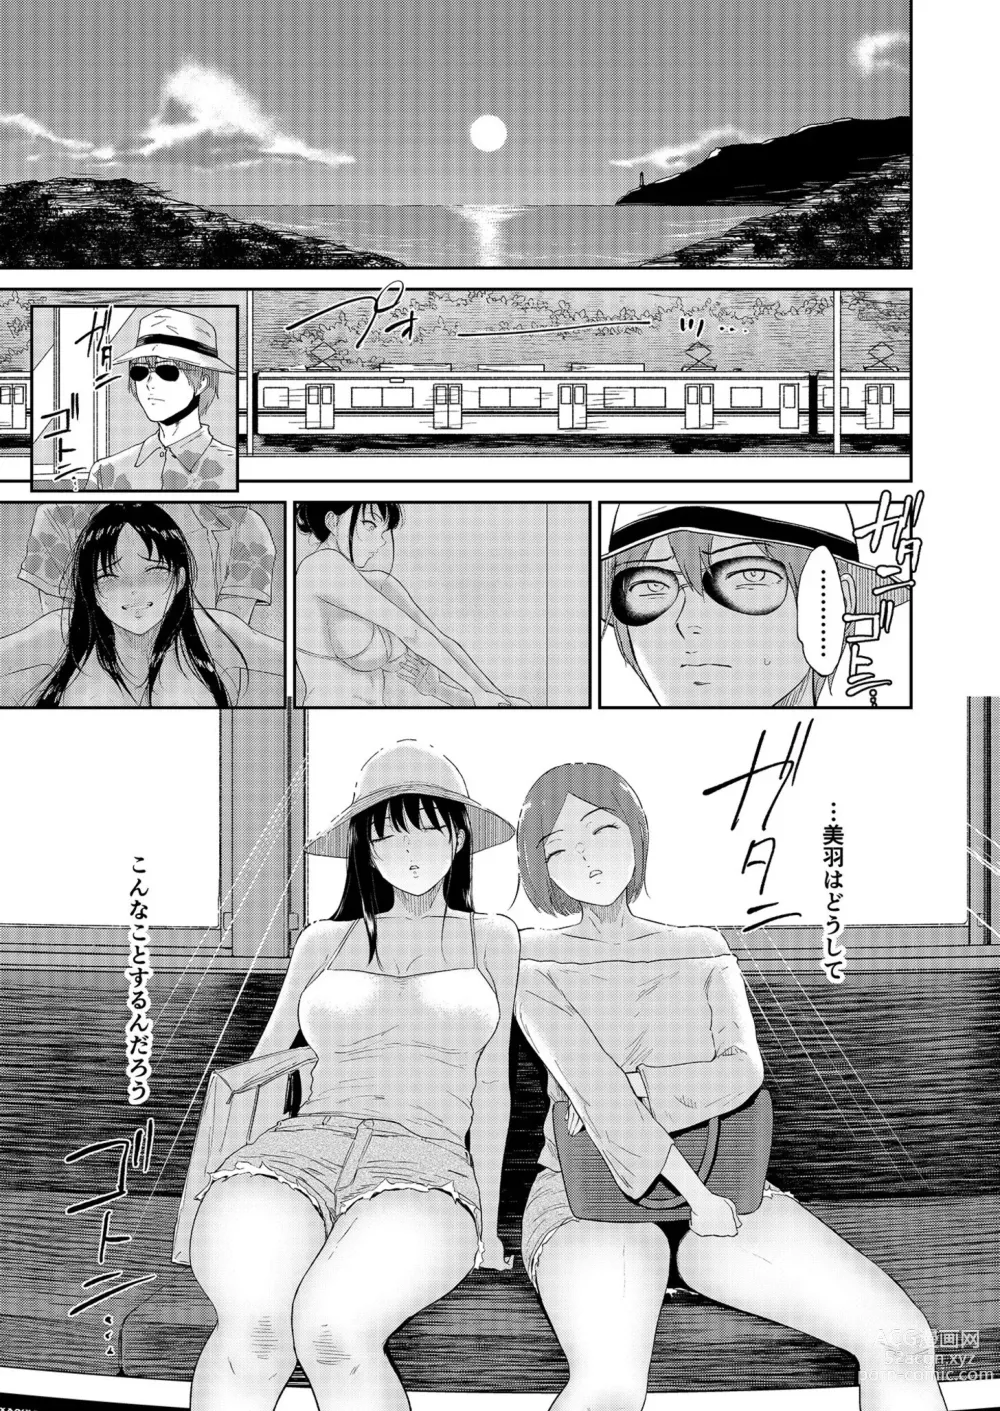 Page 33 of manga Iinarikko 4